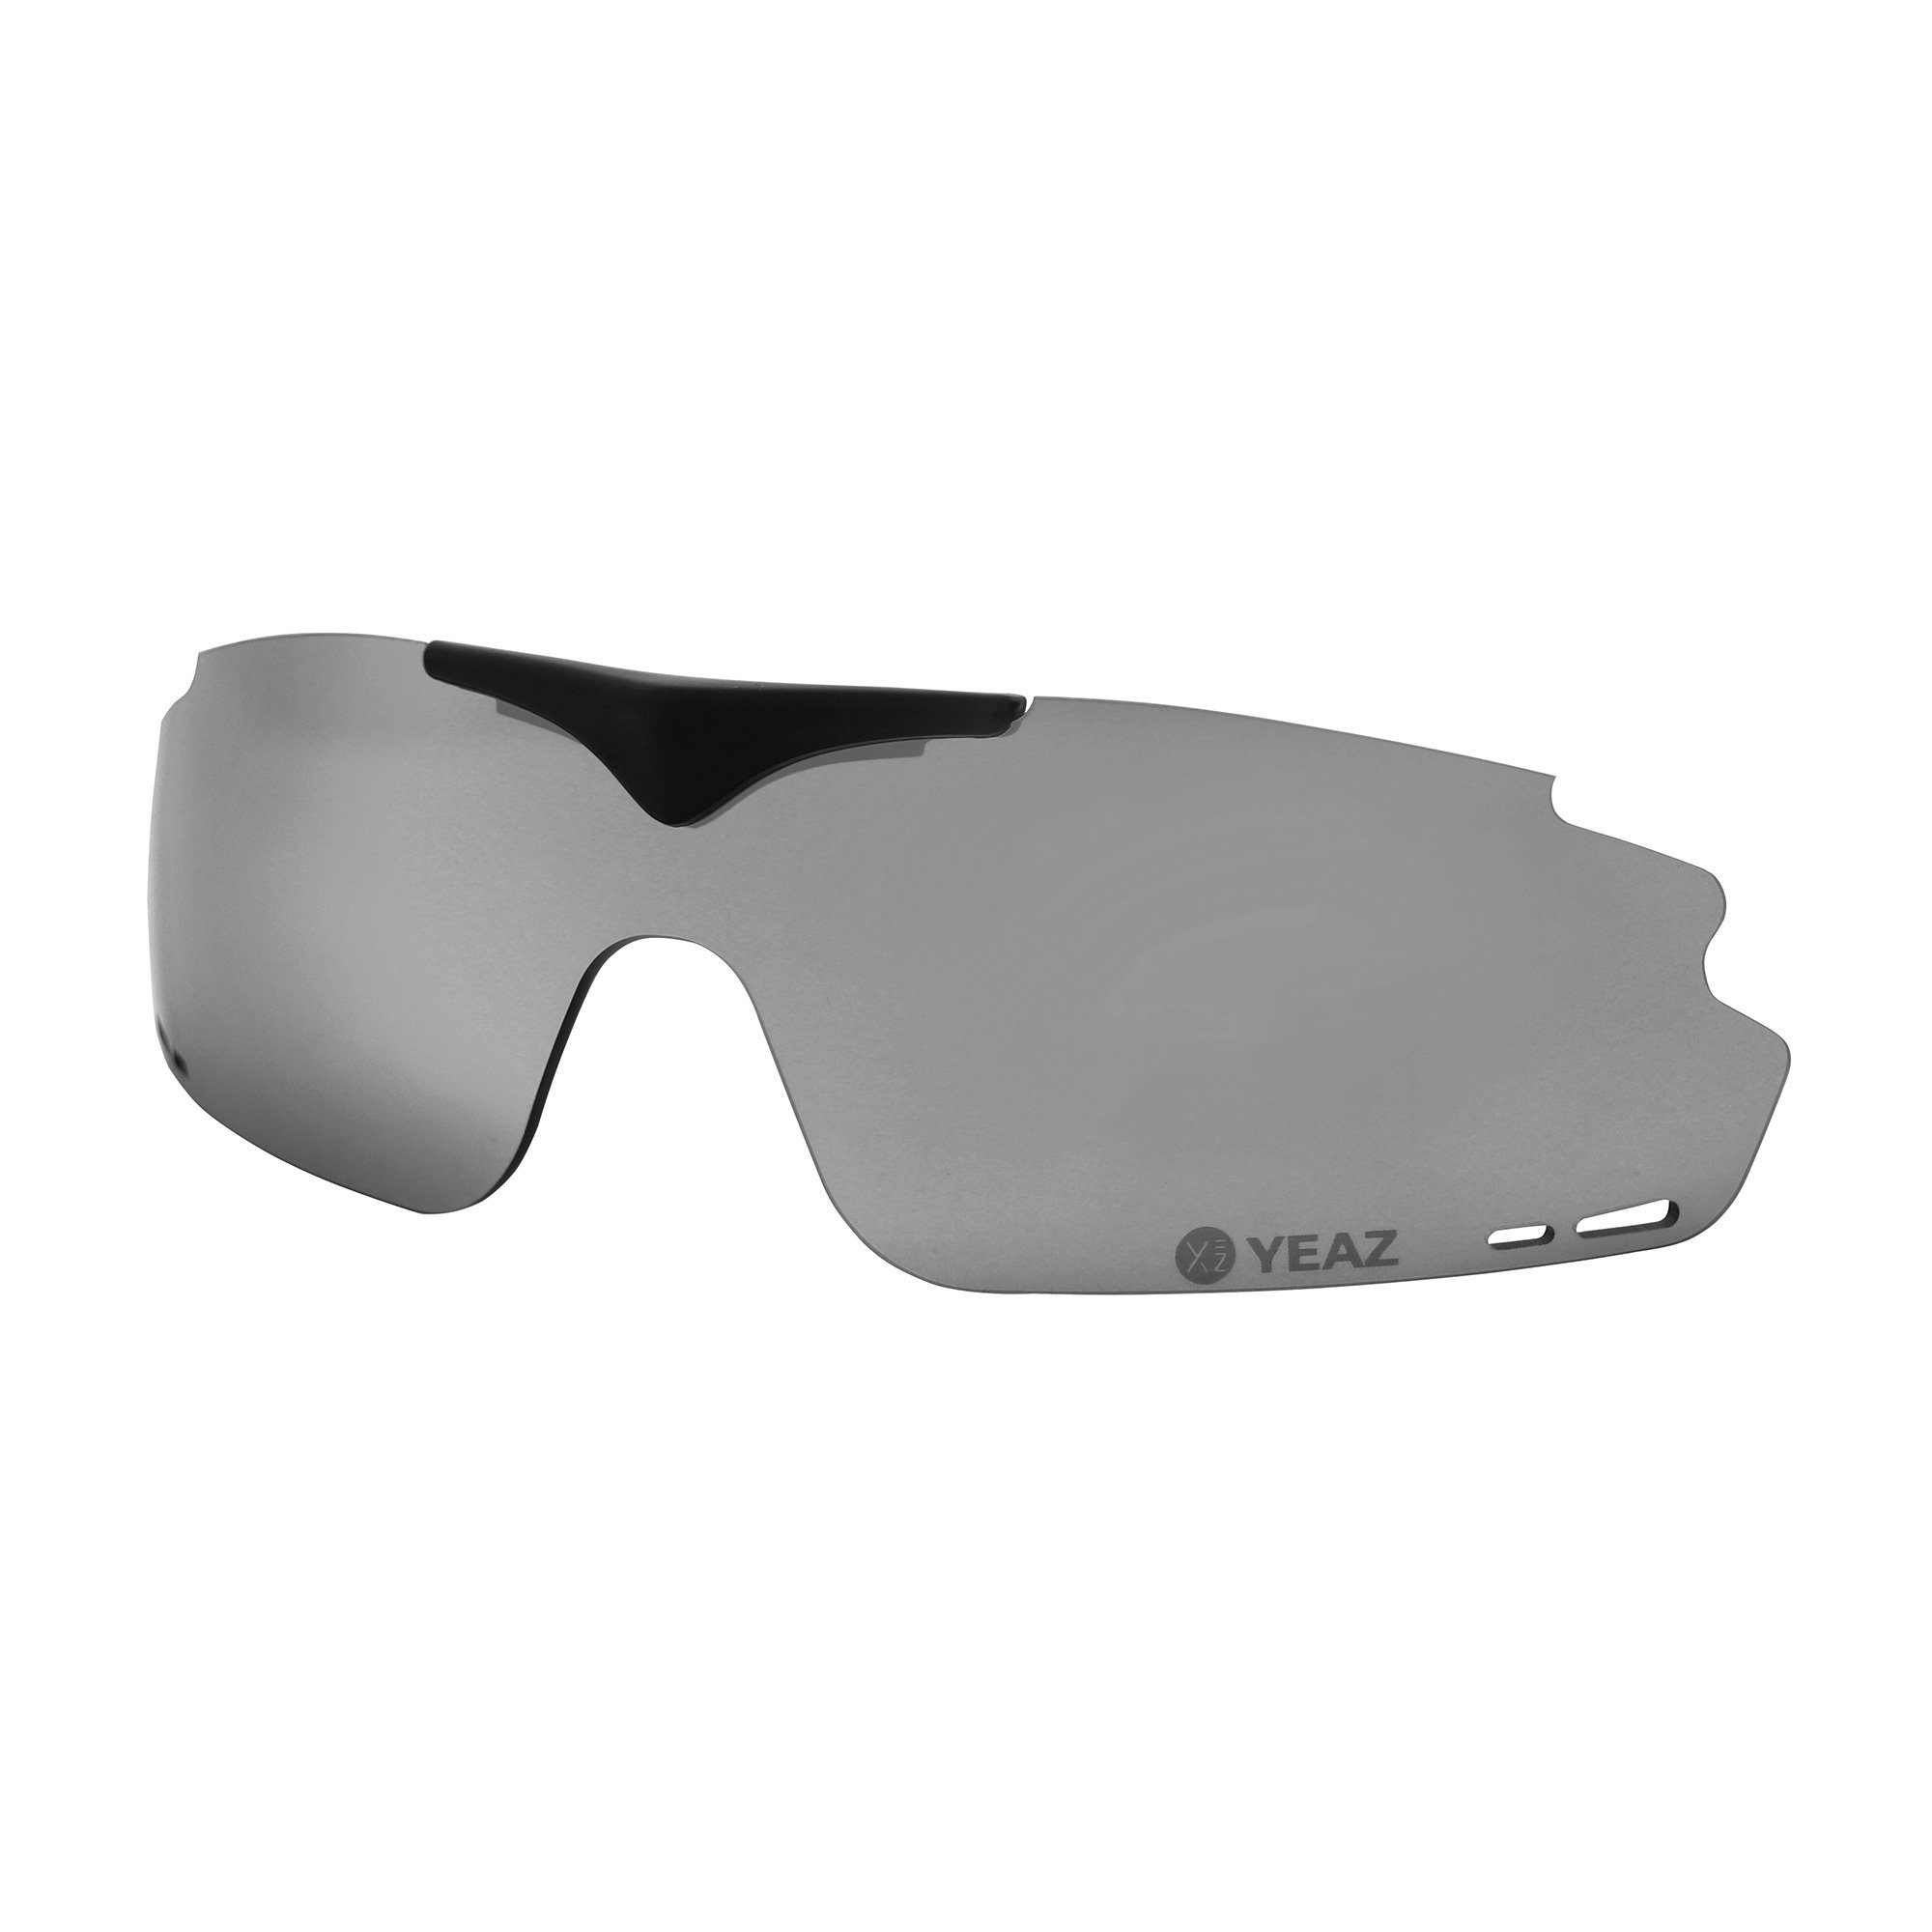 YEAZ Sportbrille SUNUP magnetisches wechselglas grey, Magnetisches Wechselglas für SUNUP | Brillen